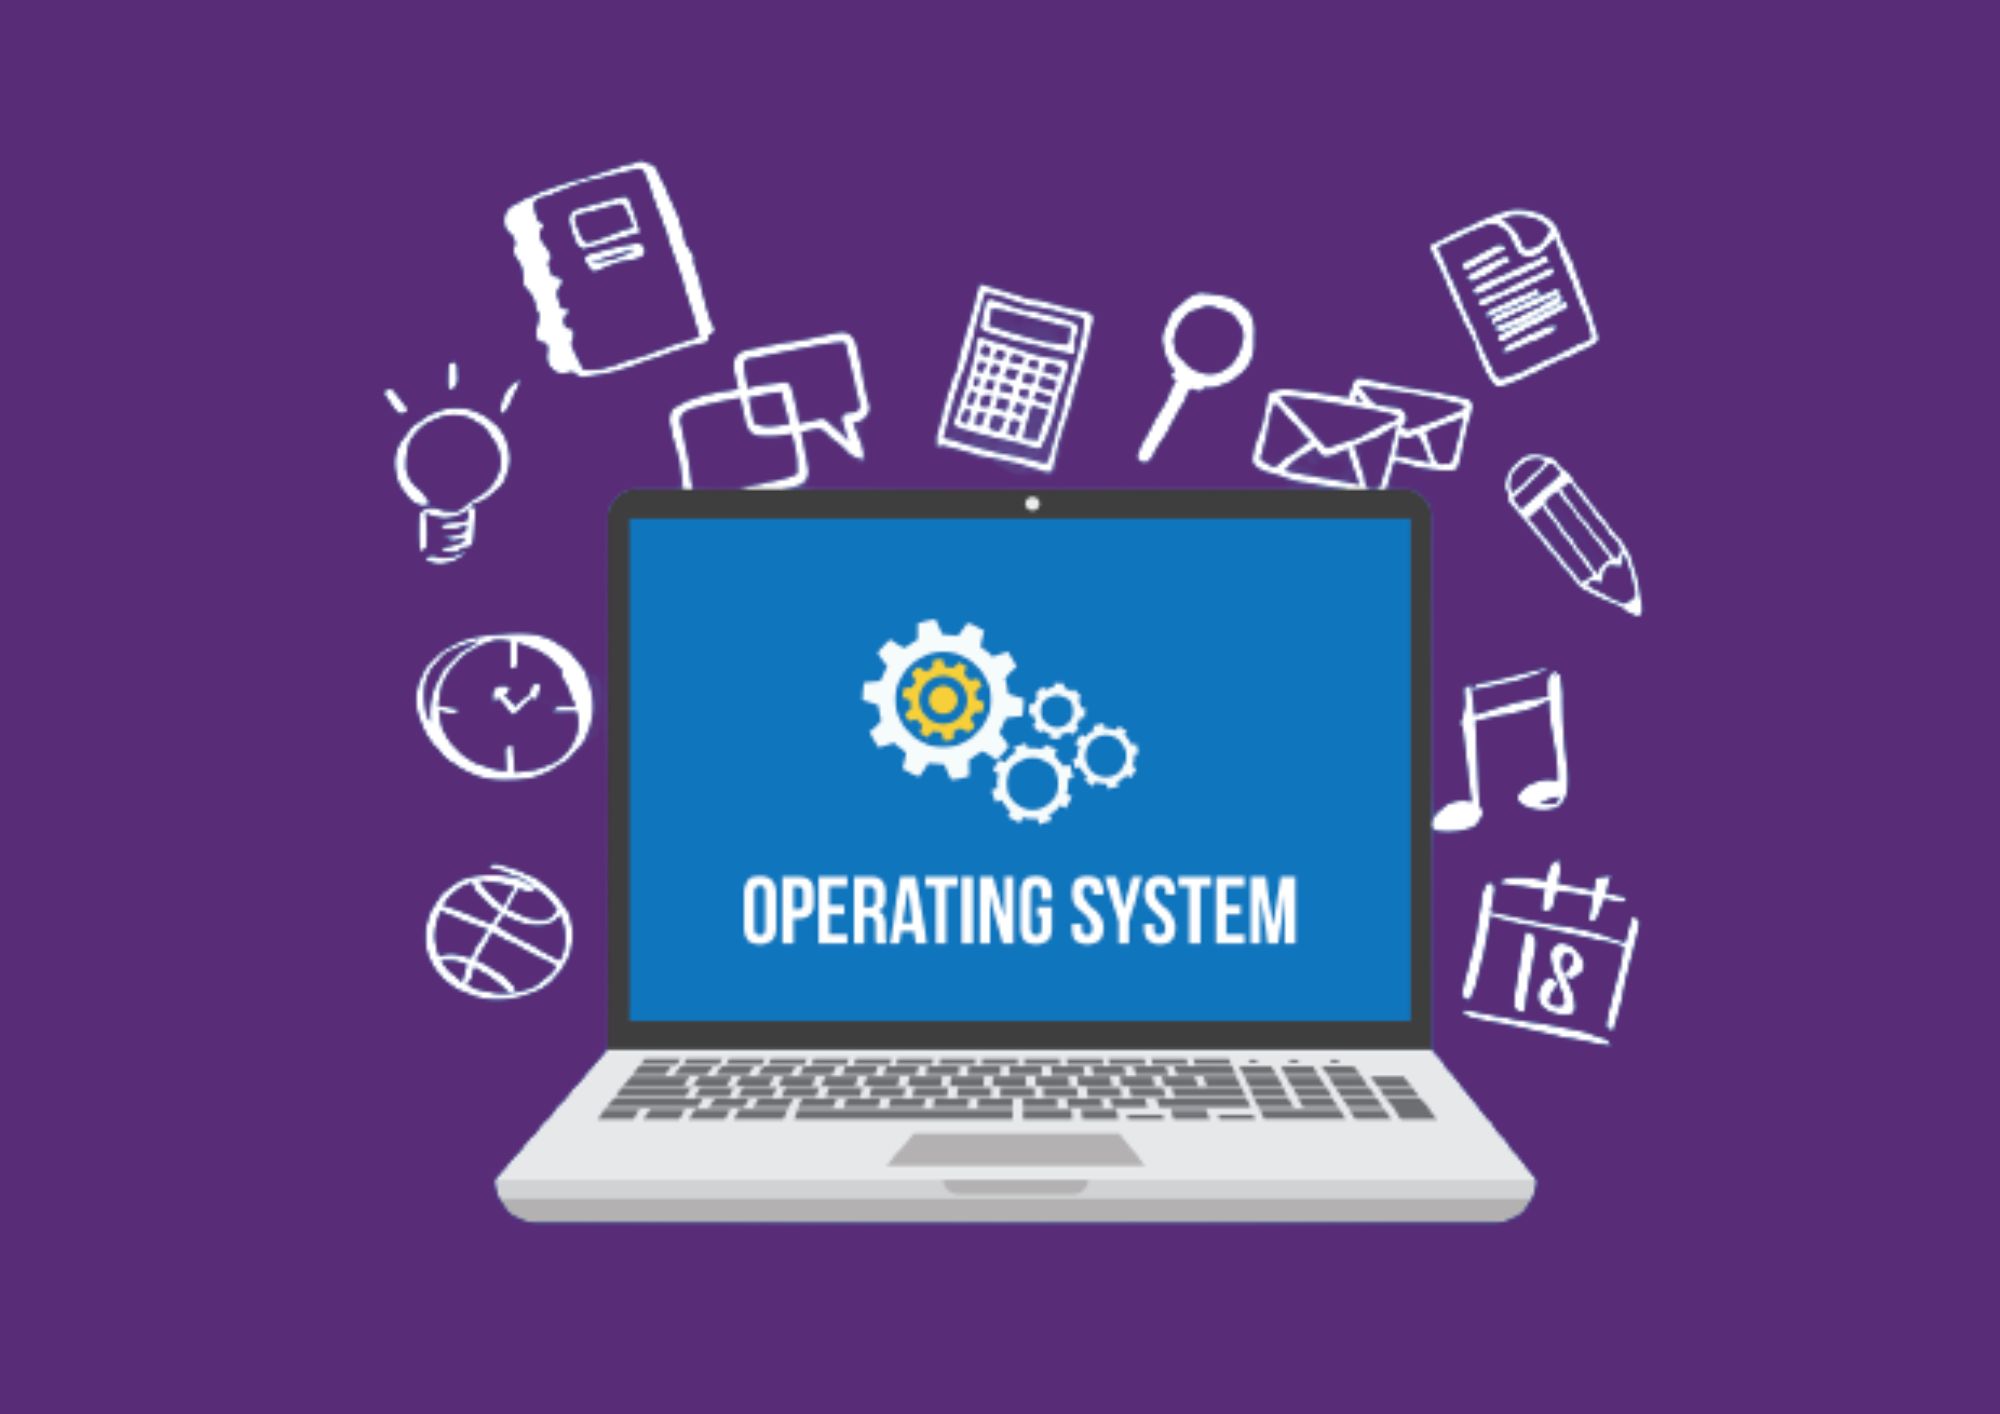 ऑपरेटिंग सिस्टम के प्रकार | Types of Operating Systems In Hindi